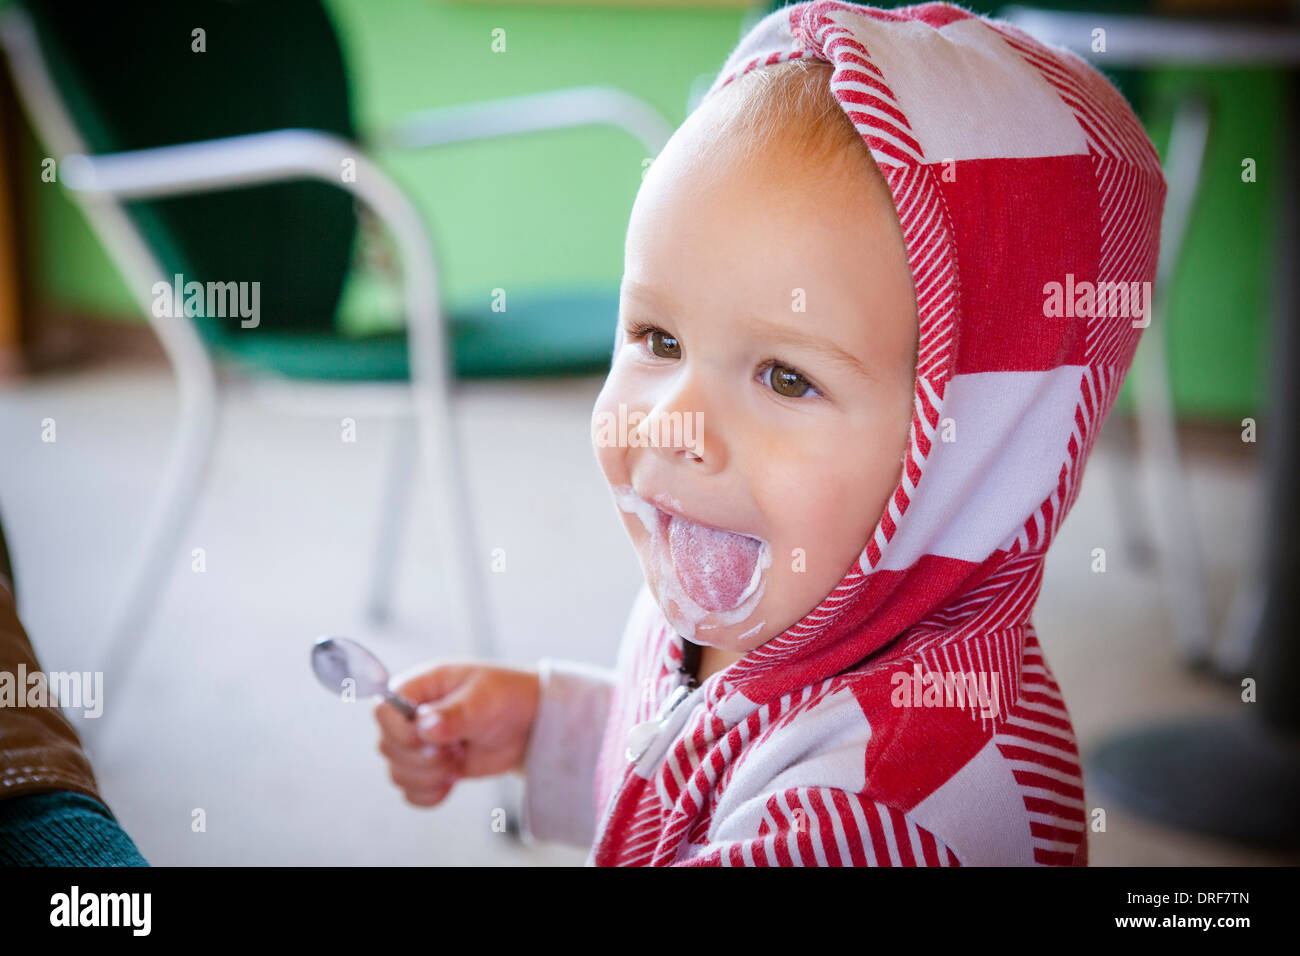 Toddler licks his lips after a snack, Osijek, Croatia Stock Photo